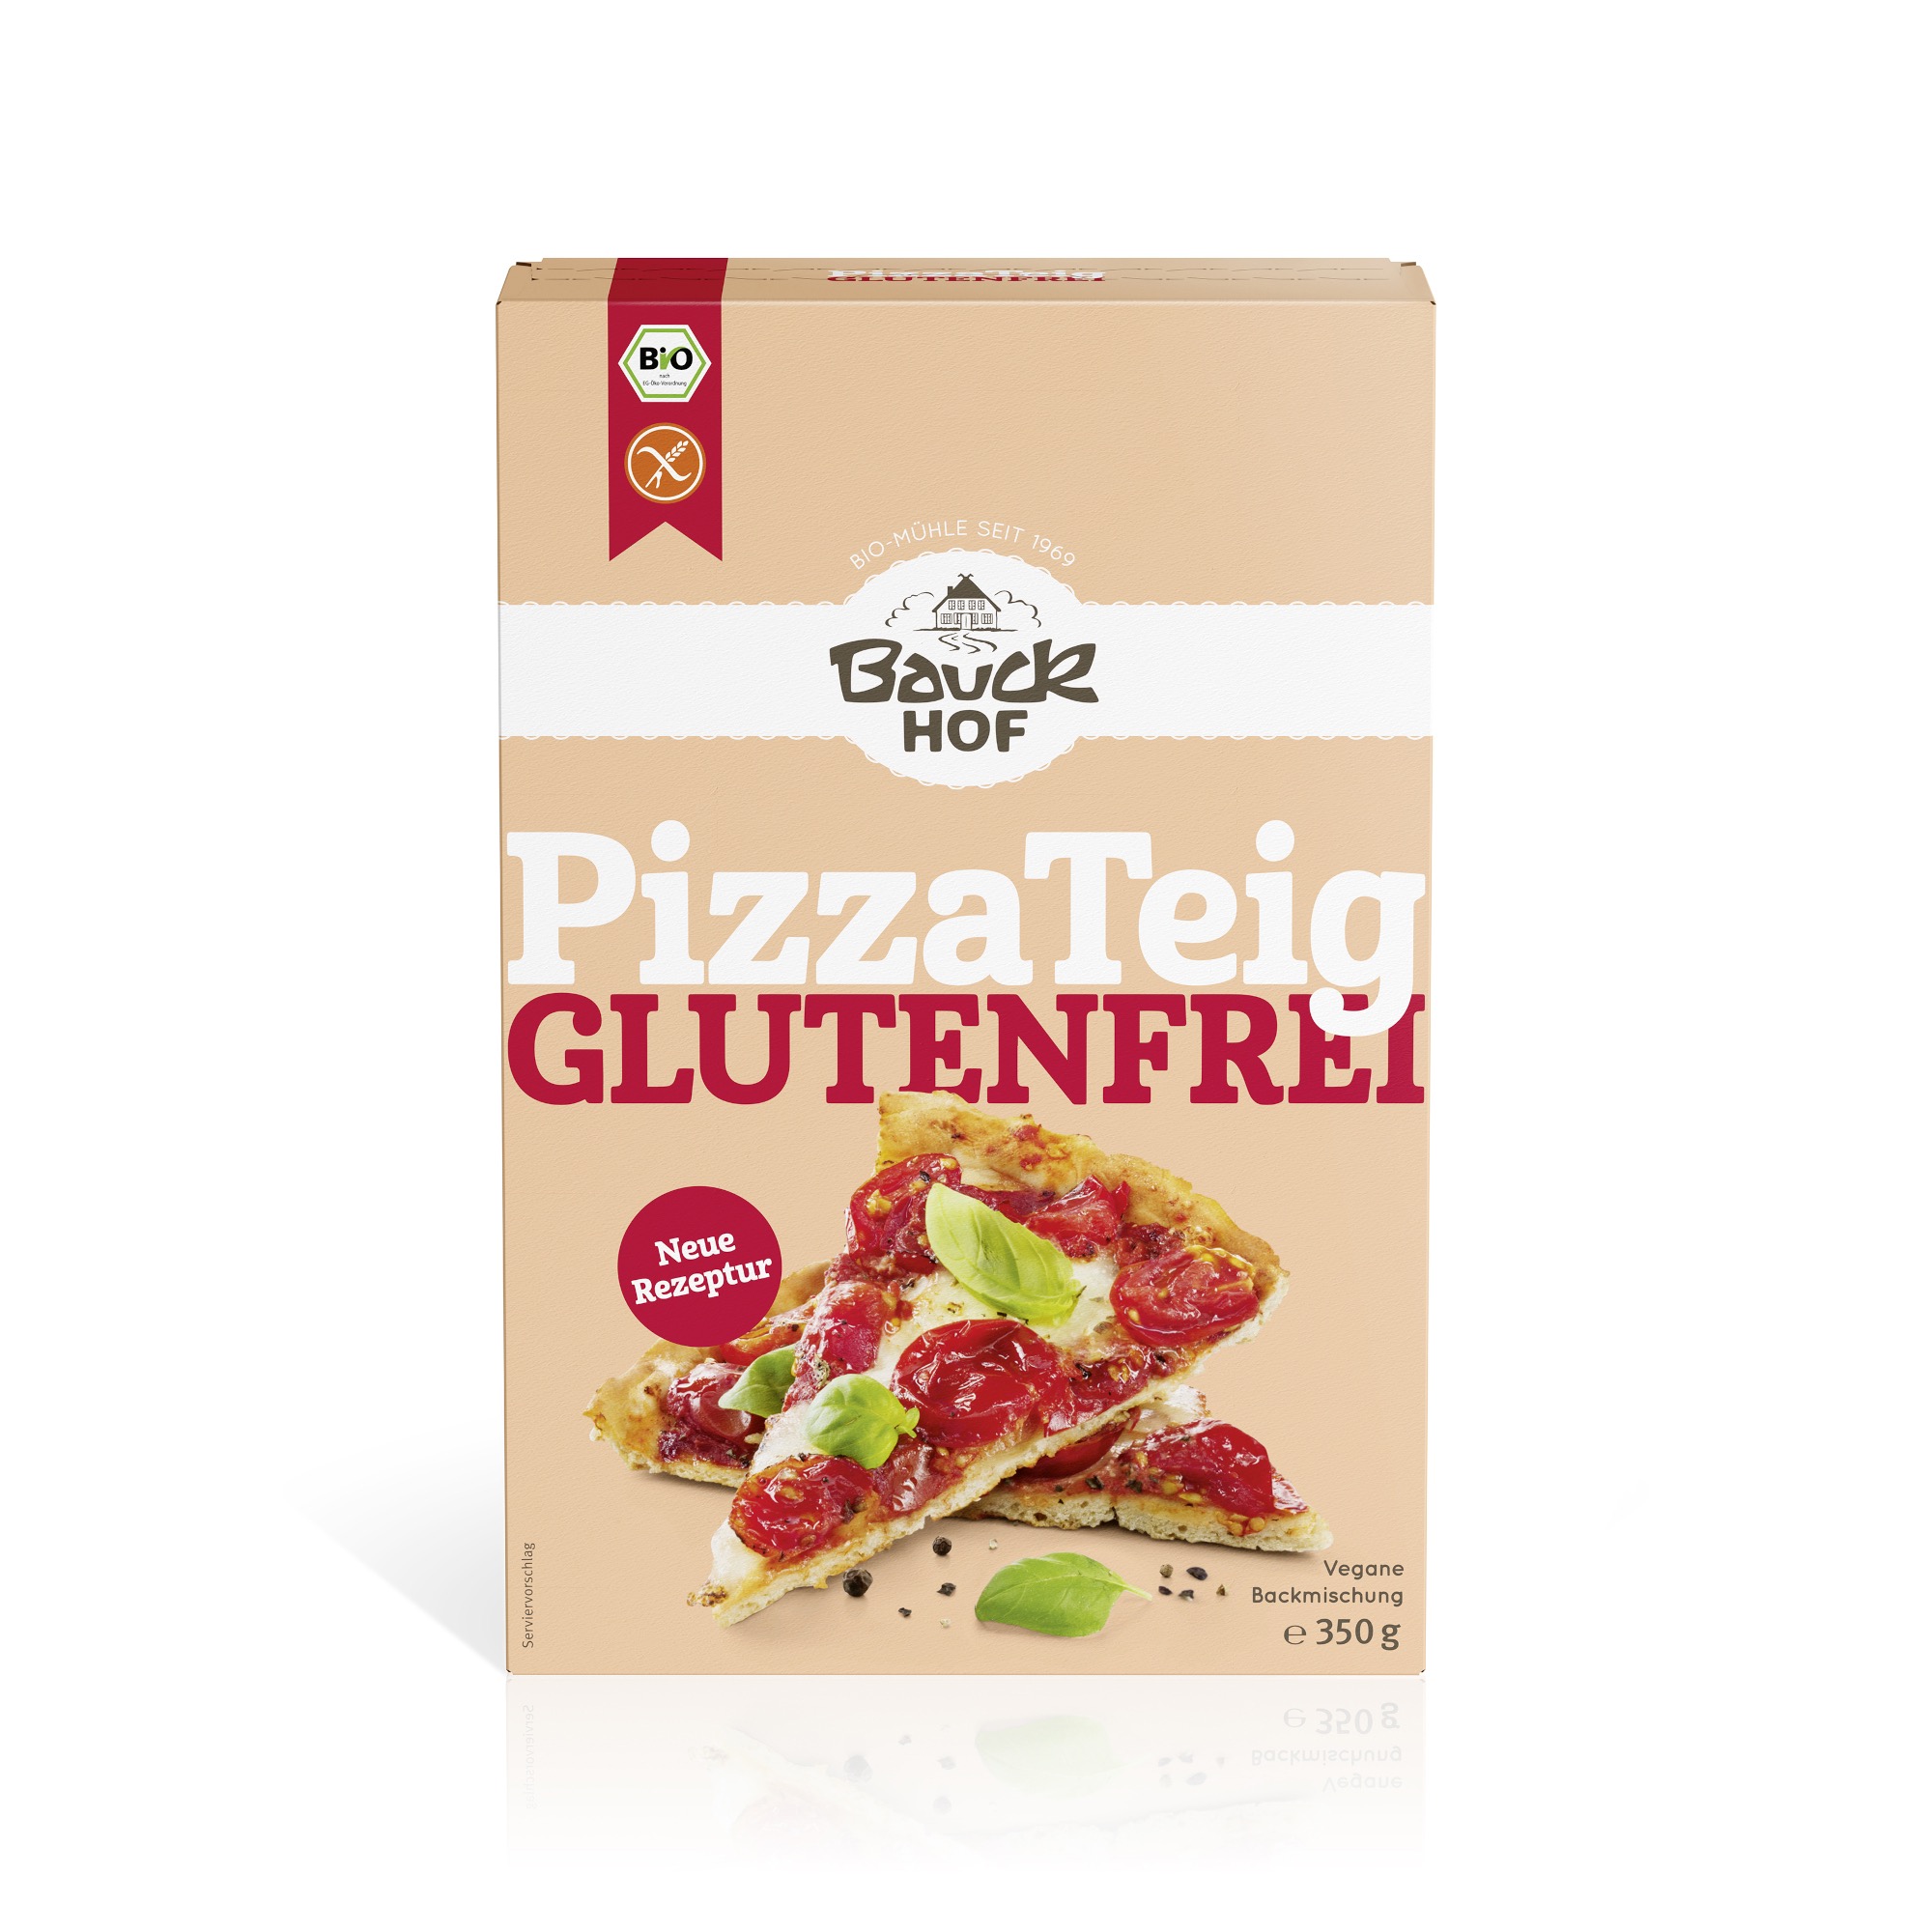 Pizzateig, glutenfrei (Bio, 350g) von Bauckhof.